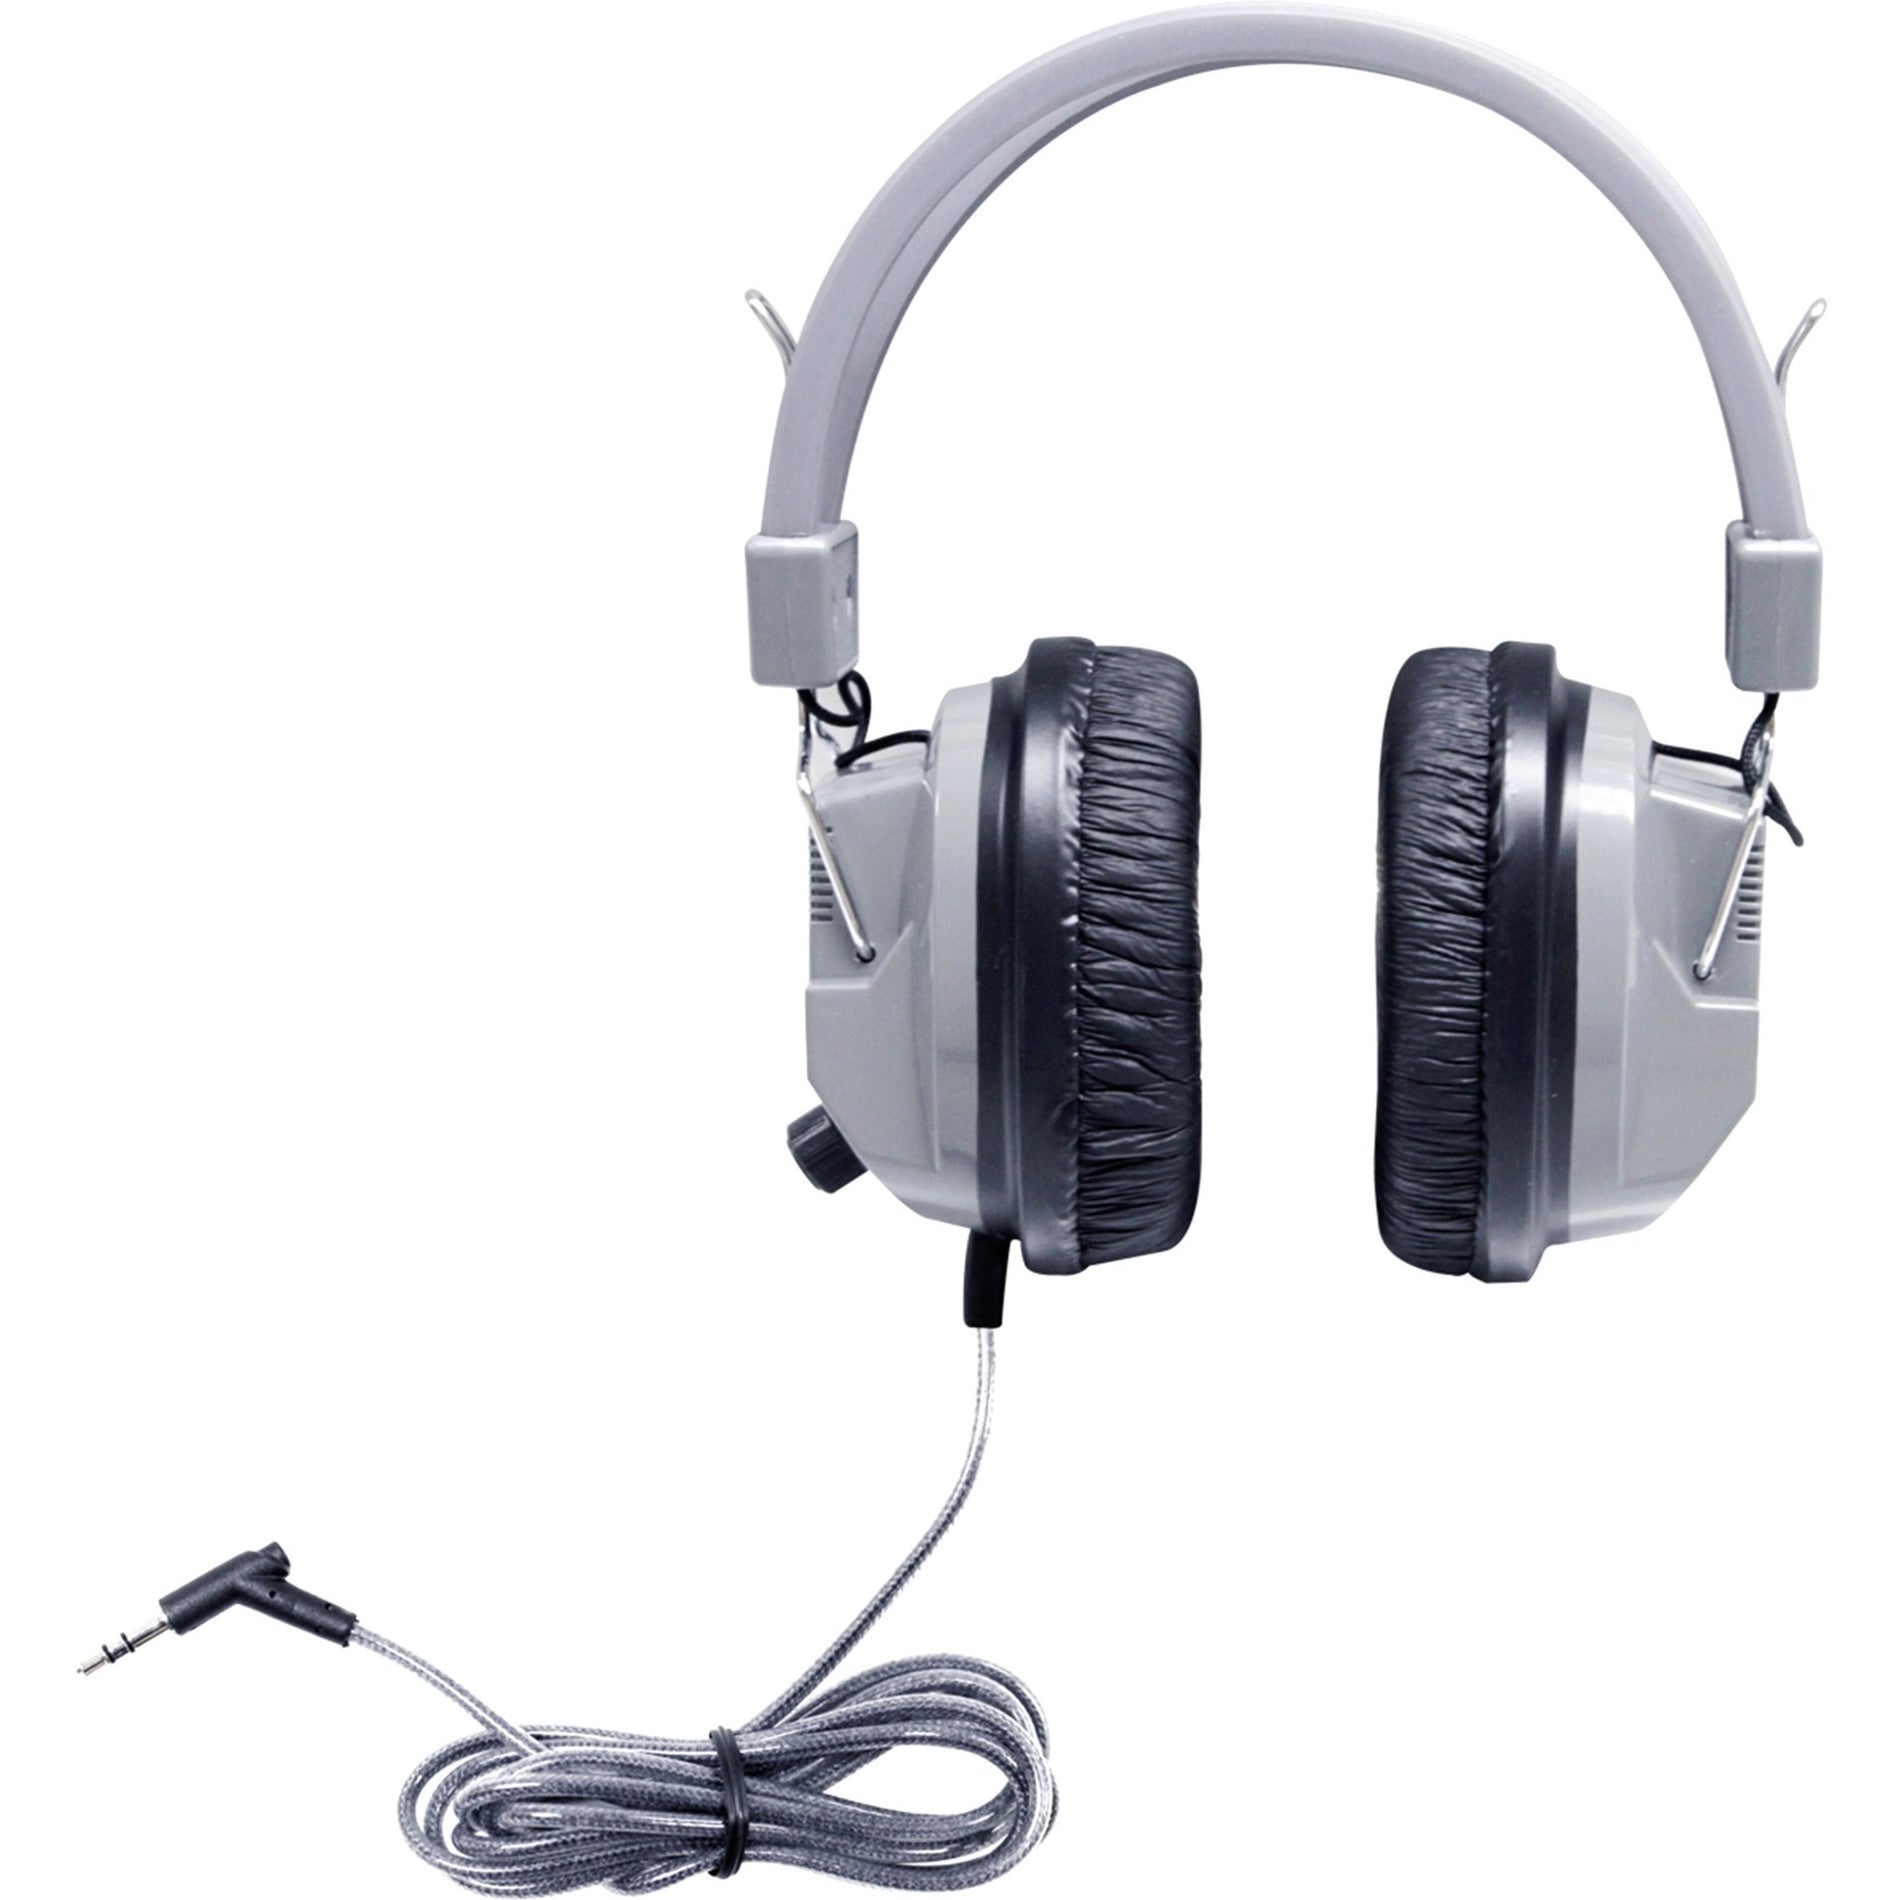 Hamilton Buhl SC-7V SchoolMate Deluxe Auriculares Estéreo con 3.5mm y Volumen Auriculares Over-Ear con Aislamiento de Ruido Cable sin Enredos y Diseño Robusto.